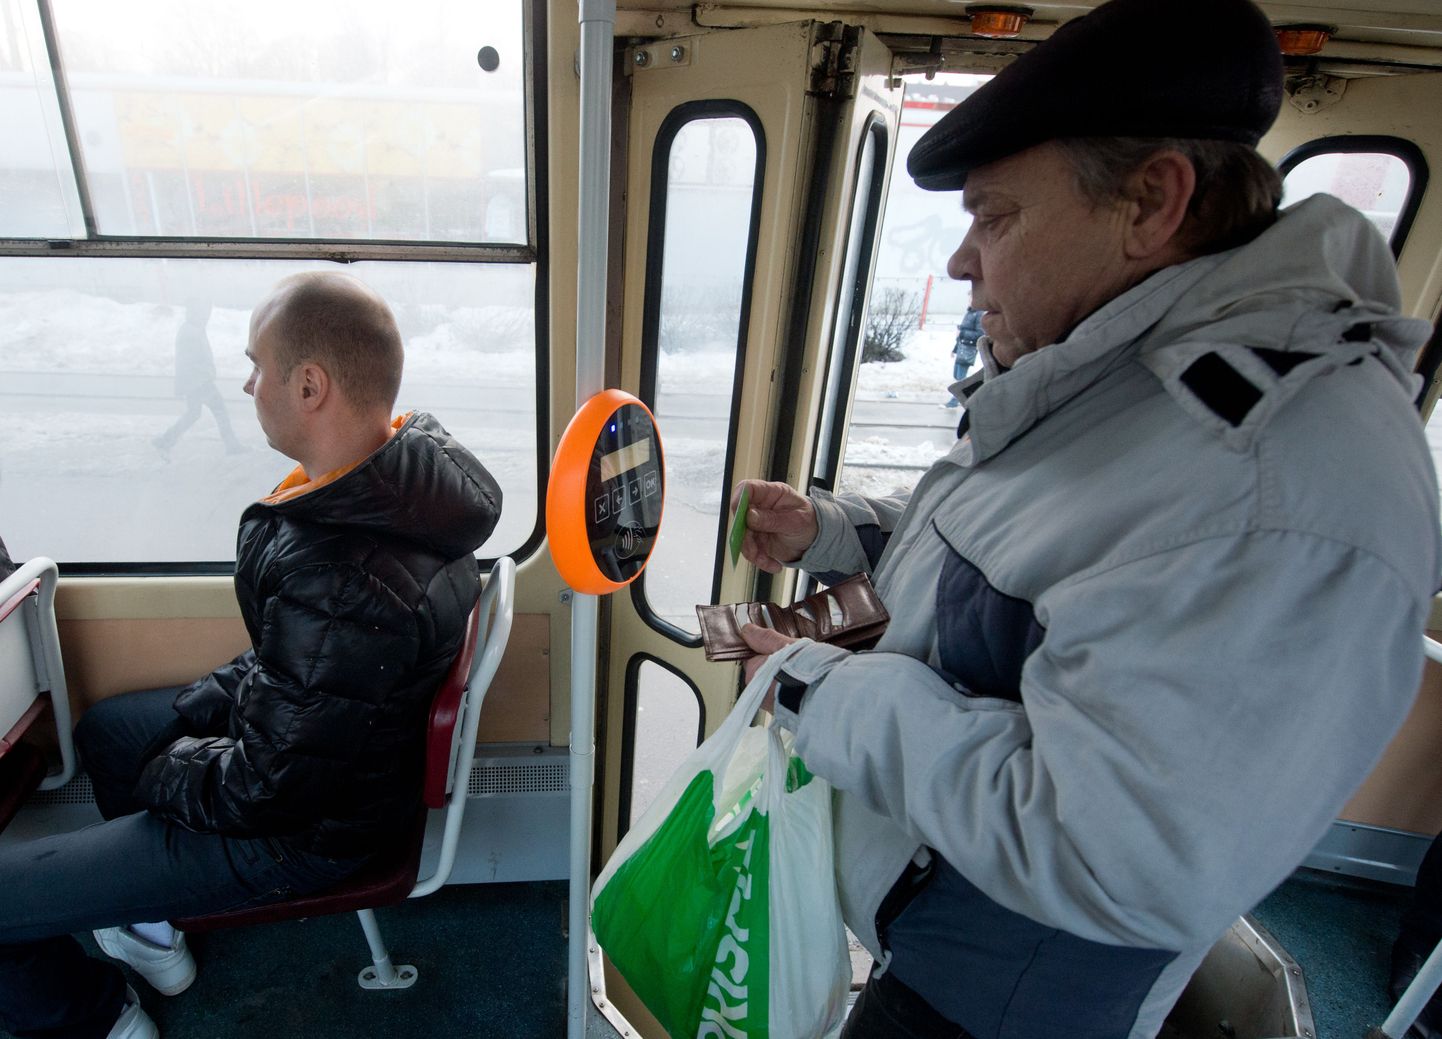 Sellest aastast võivad tallinlased ühiskaardi valideerimisel ühistranspordis tasuta sõita.